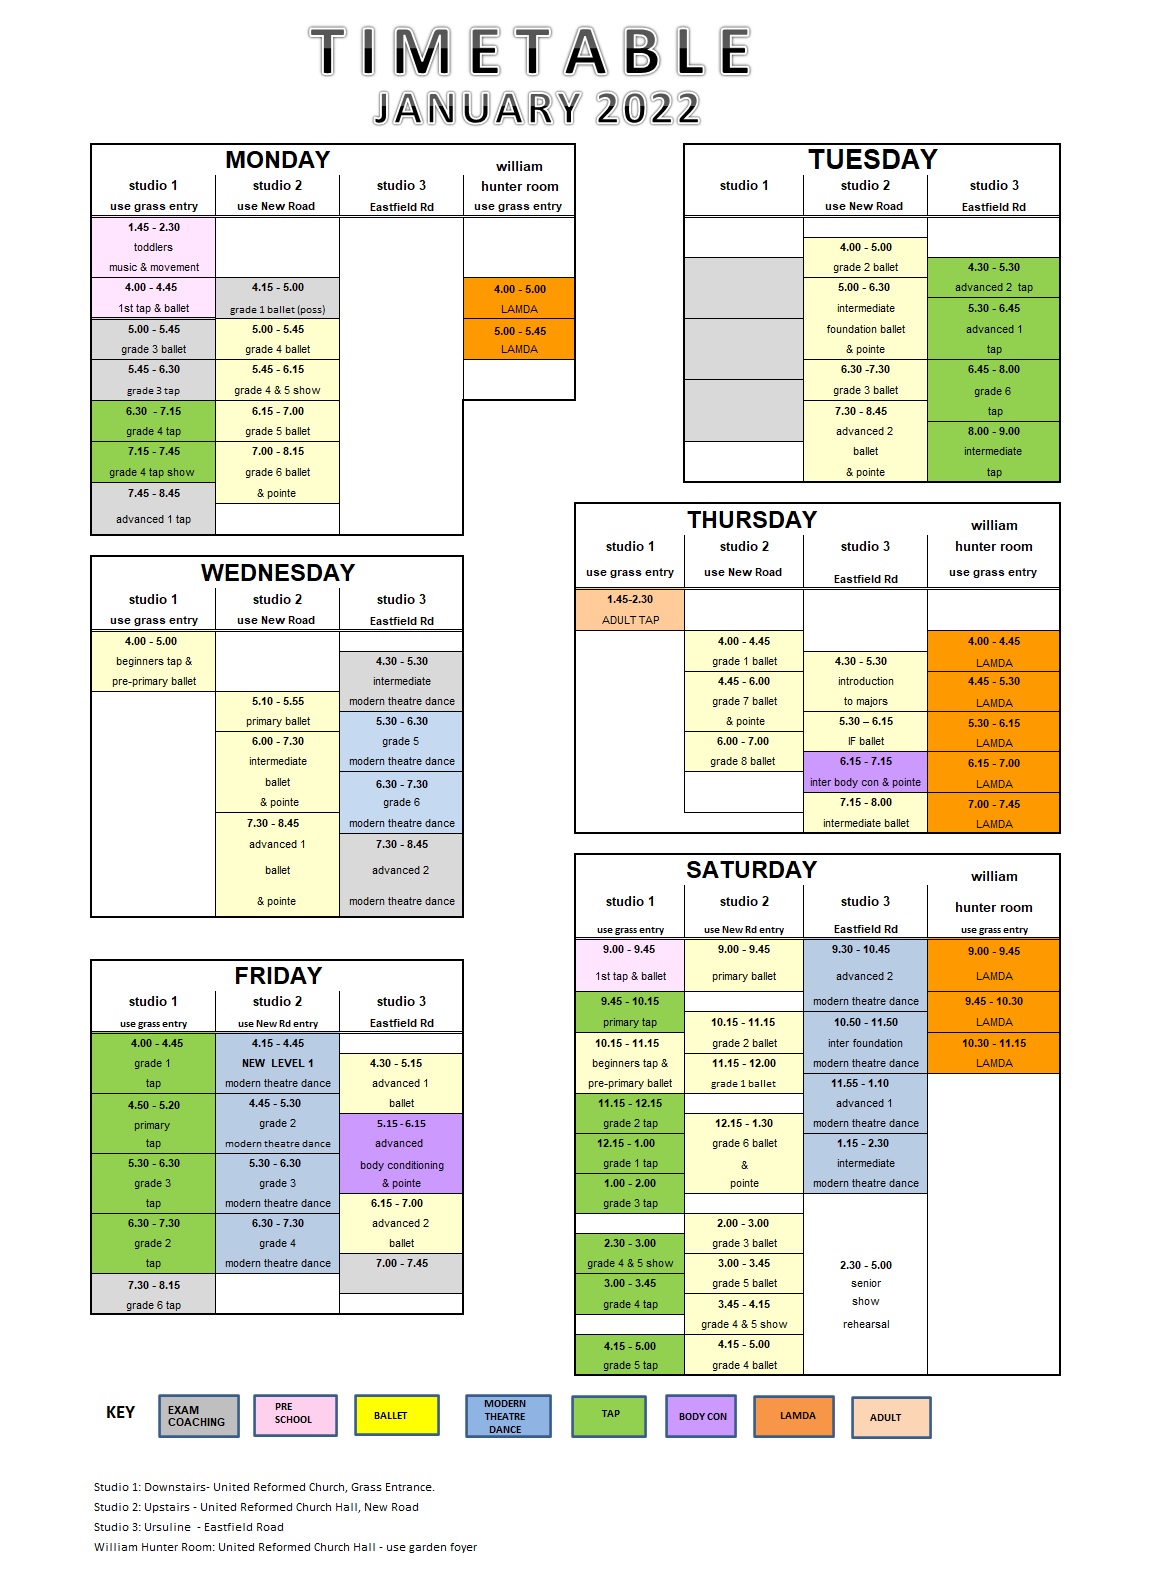 Timetable JAN 2022